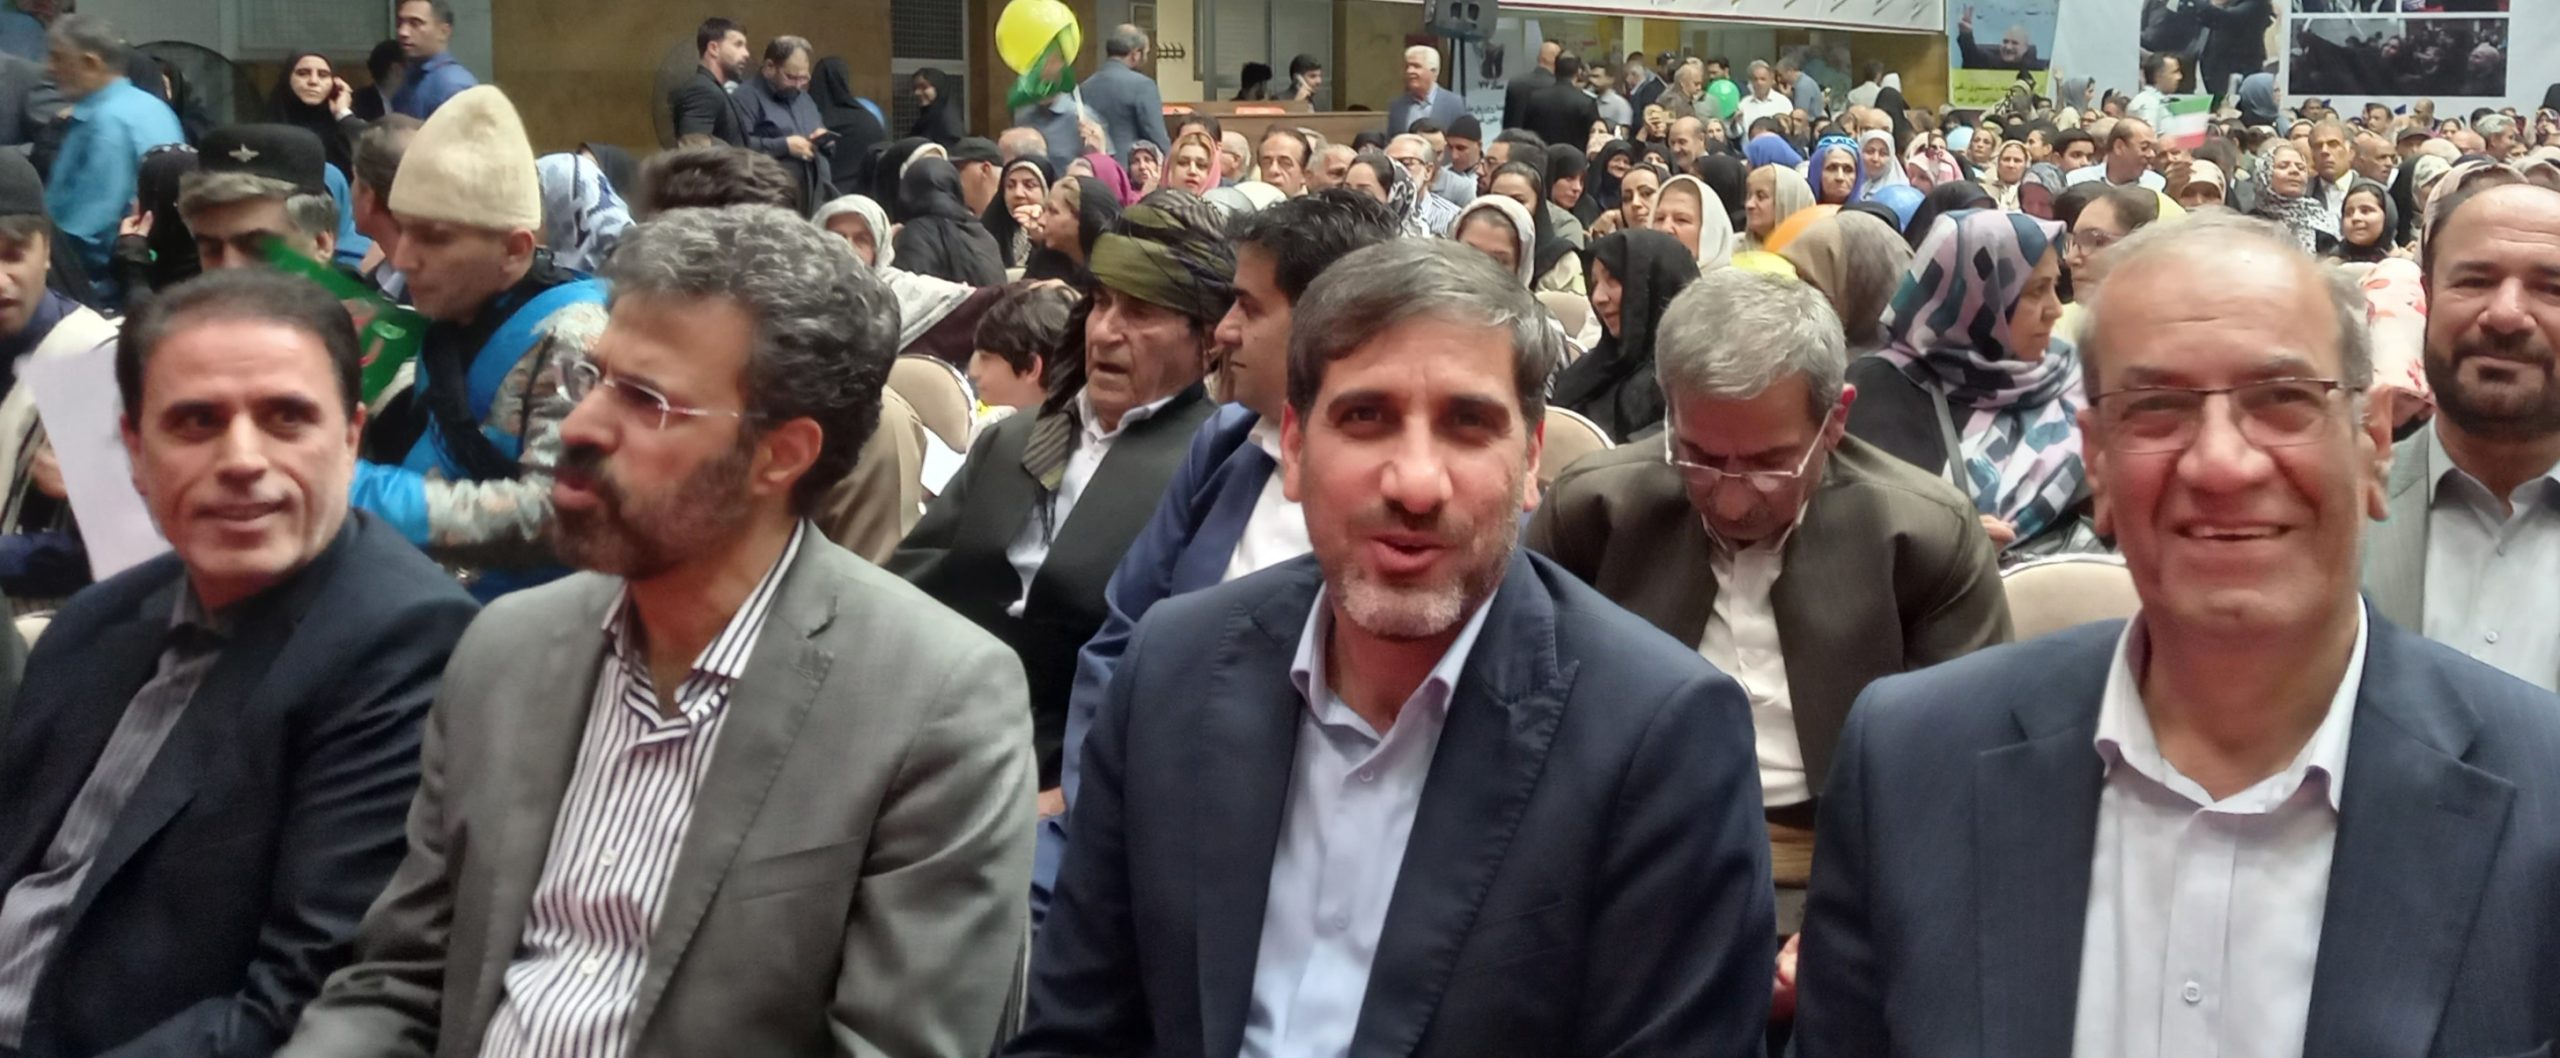 حضور گستره بازنشستگان تامین اجتماعی استان و شهرستان تهران در جشن عید غدیر+ عکس